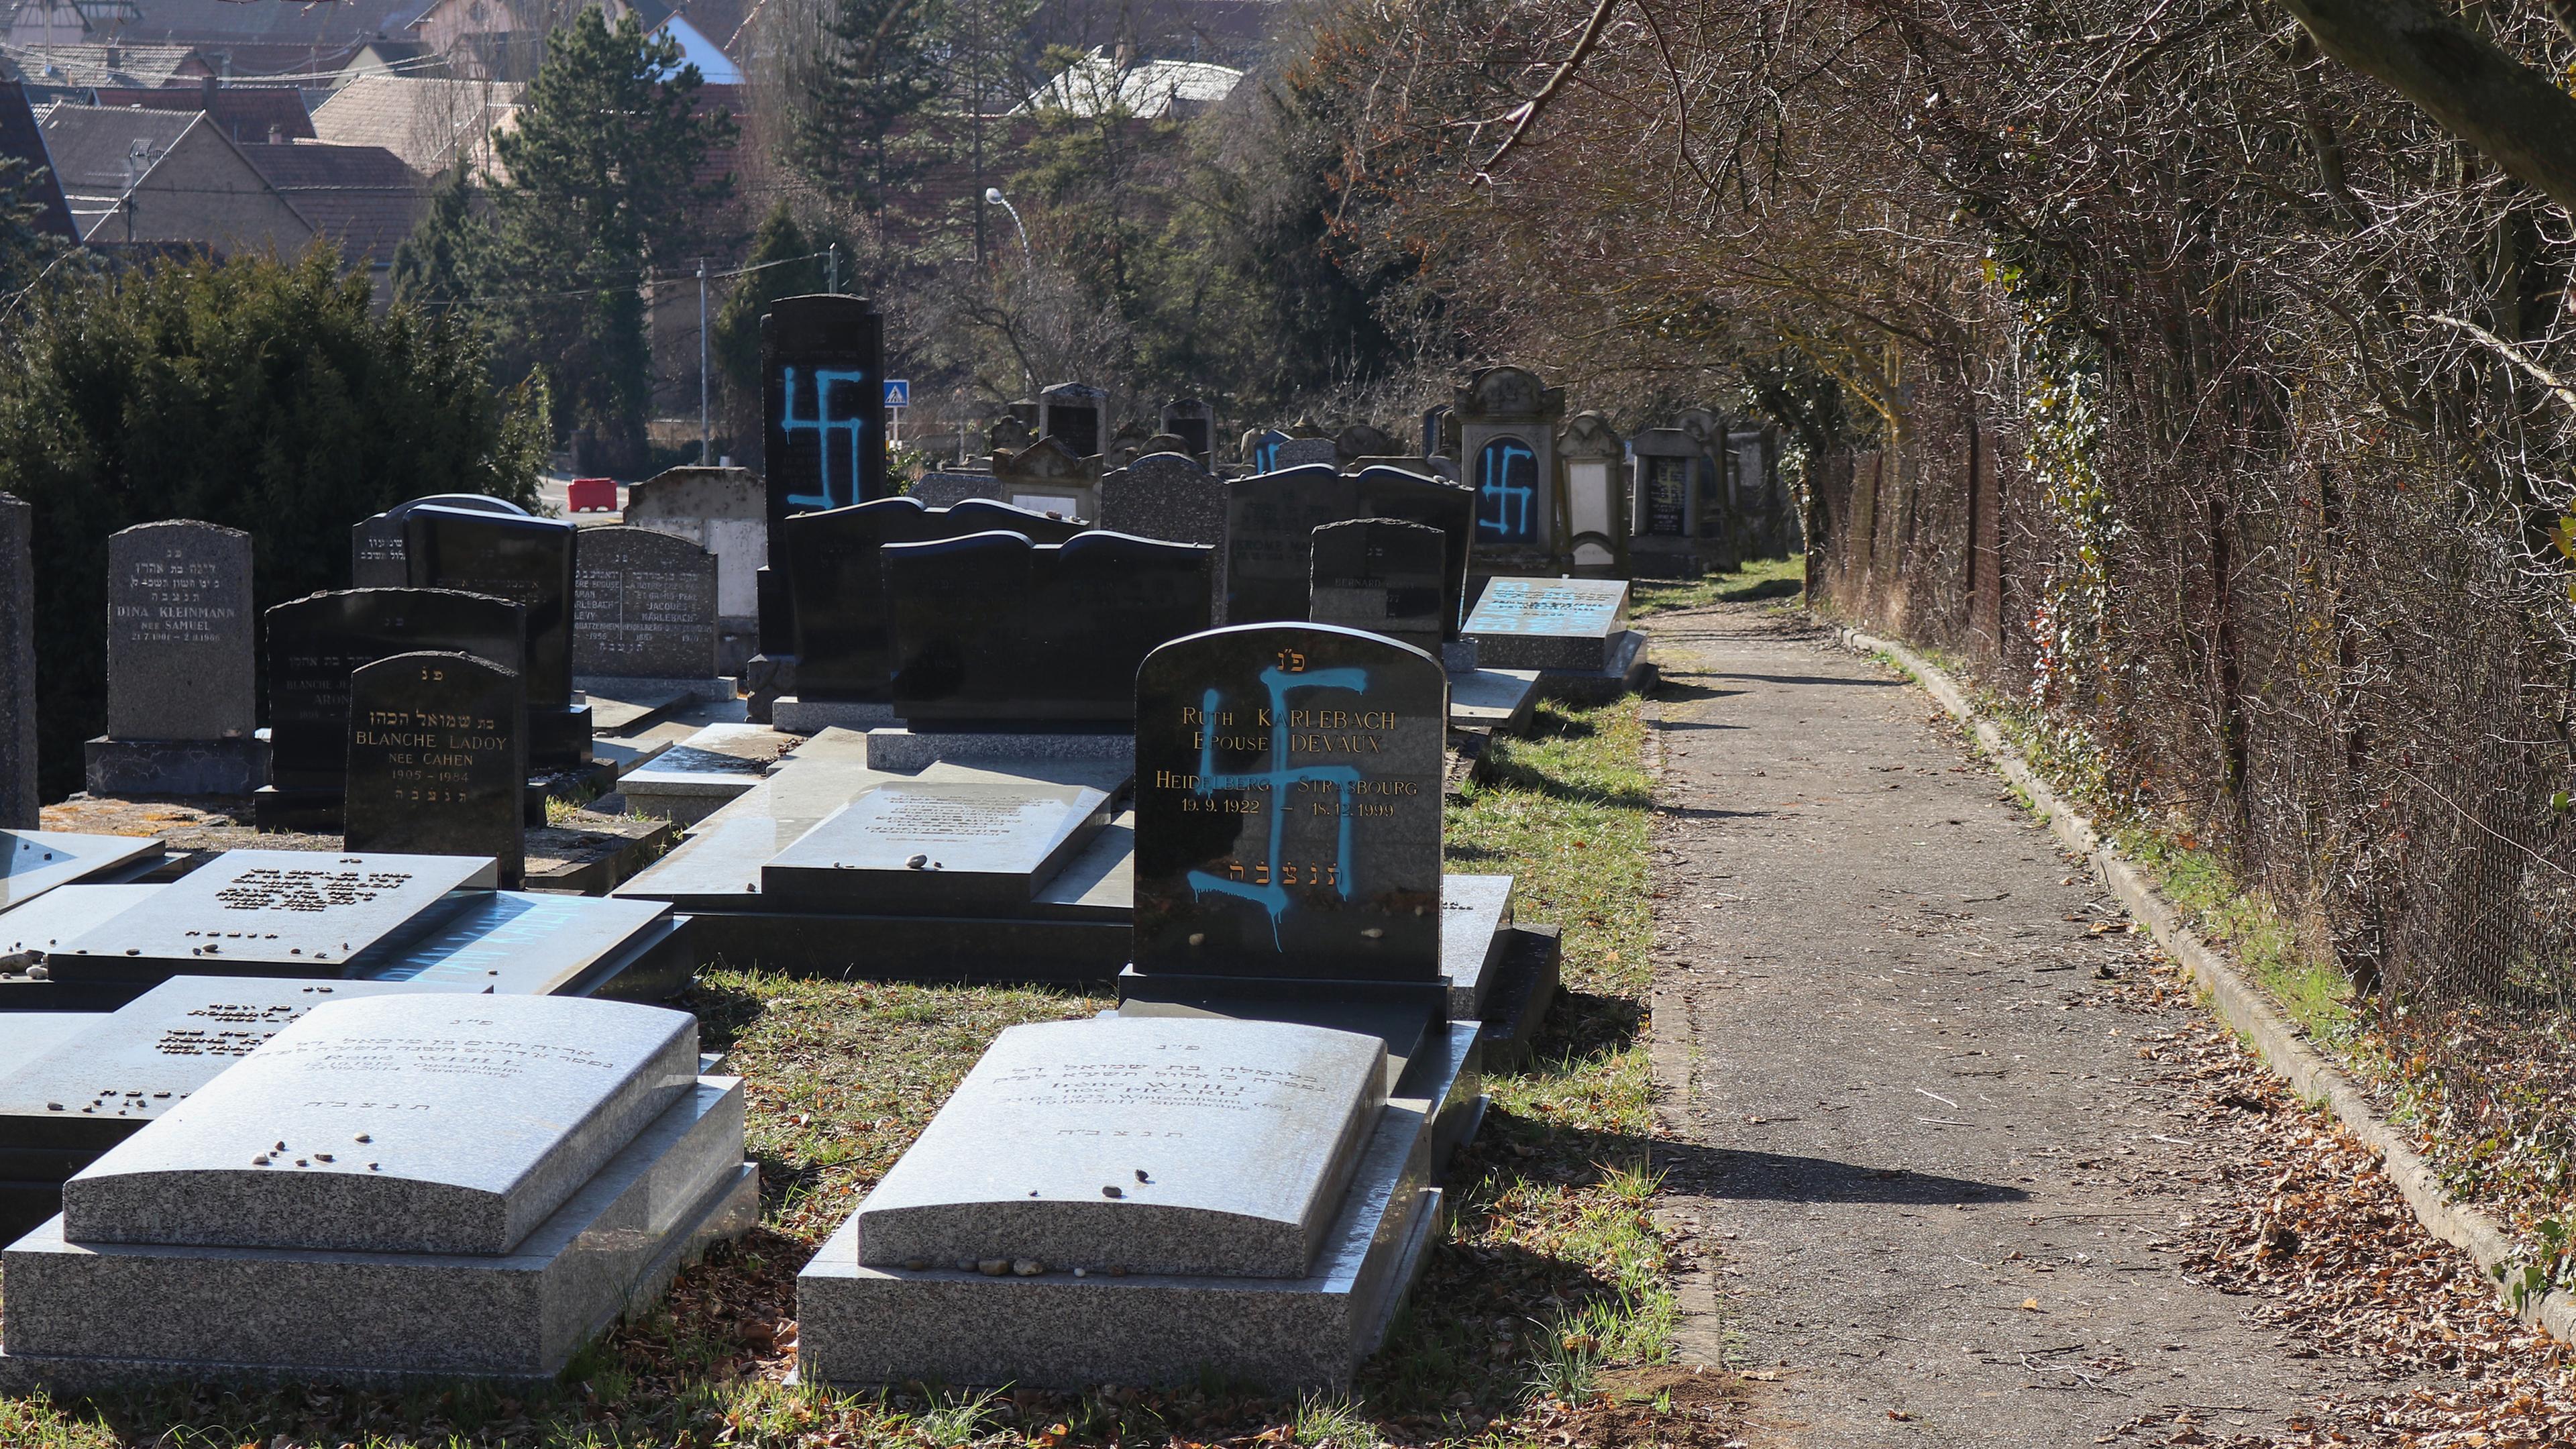 Auf zahlreichen Grabsteinen des jüdischen Friedhofes von Quatzenheim sind aufgesprühte Hakenkreuze zu sehen.